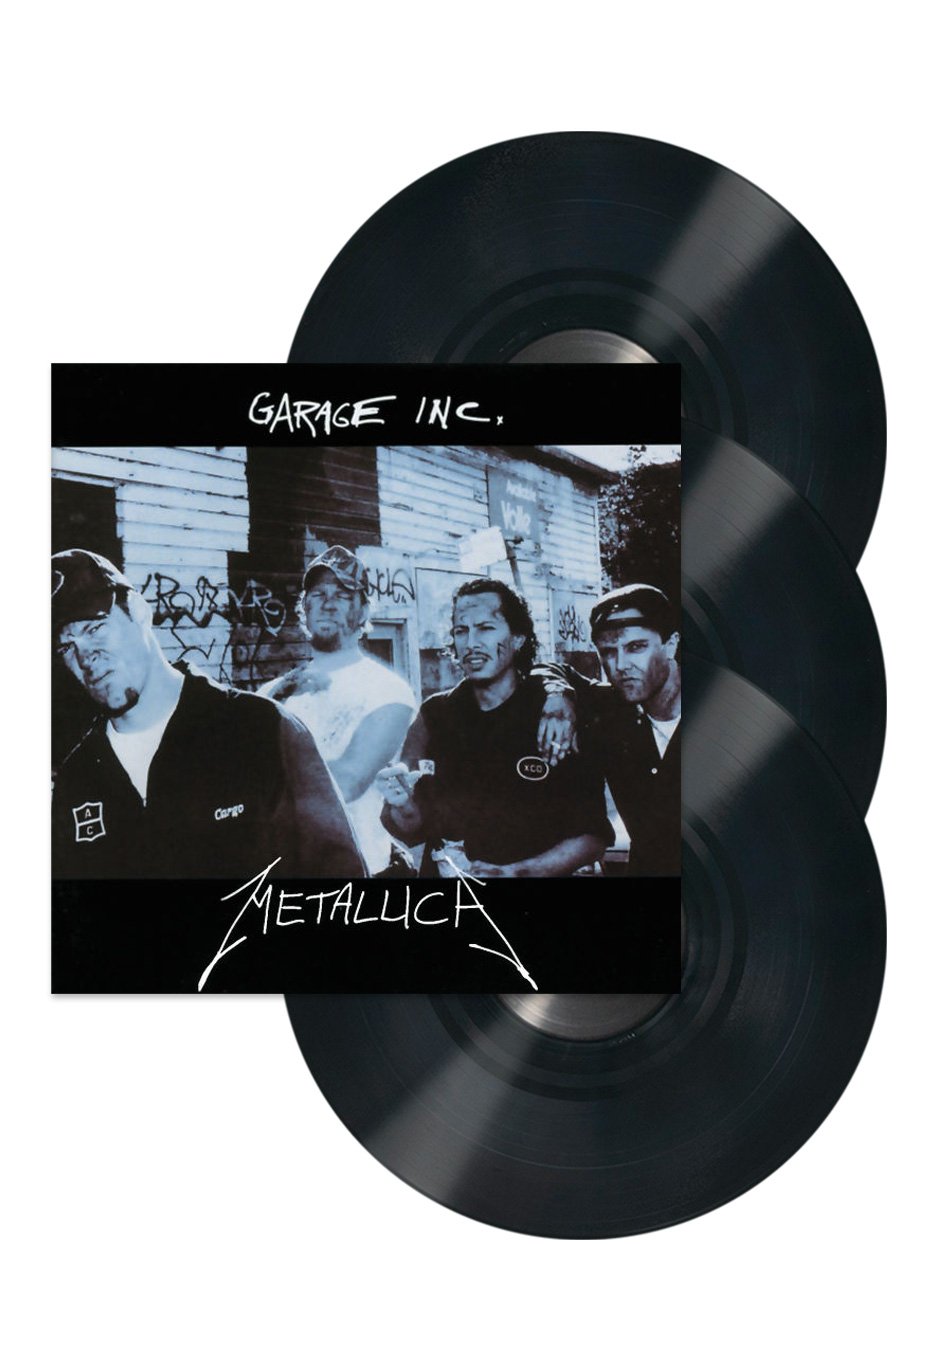 Metallica - Garage Inc. - 3 Vinyl